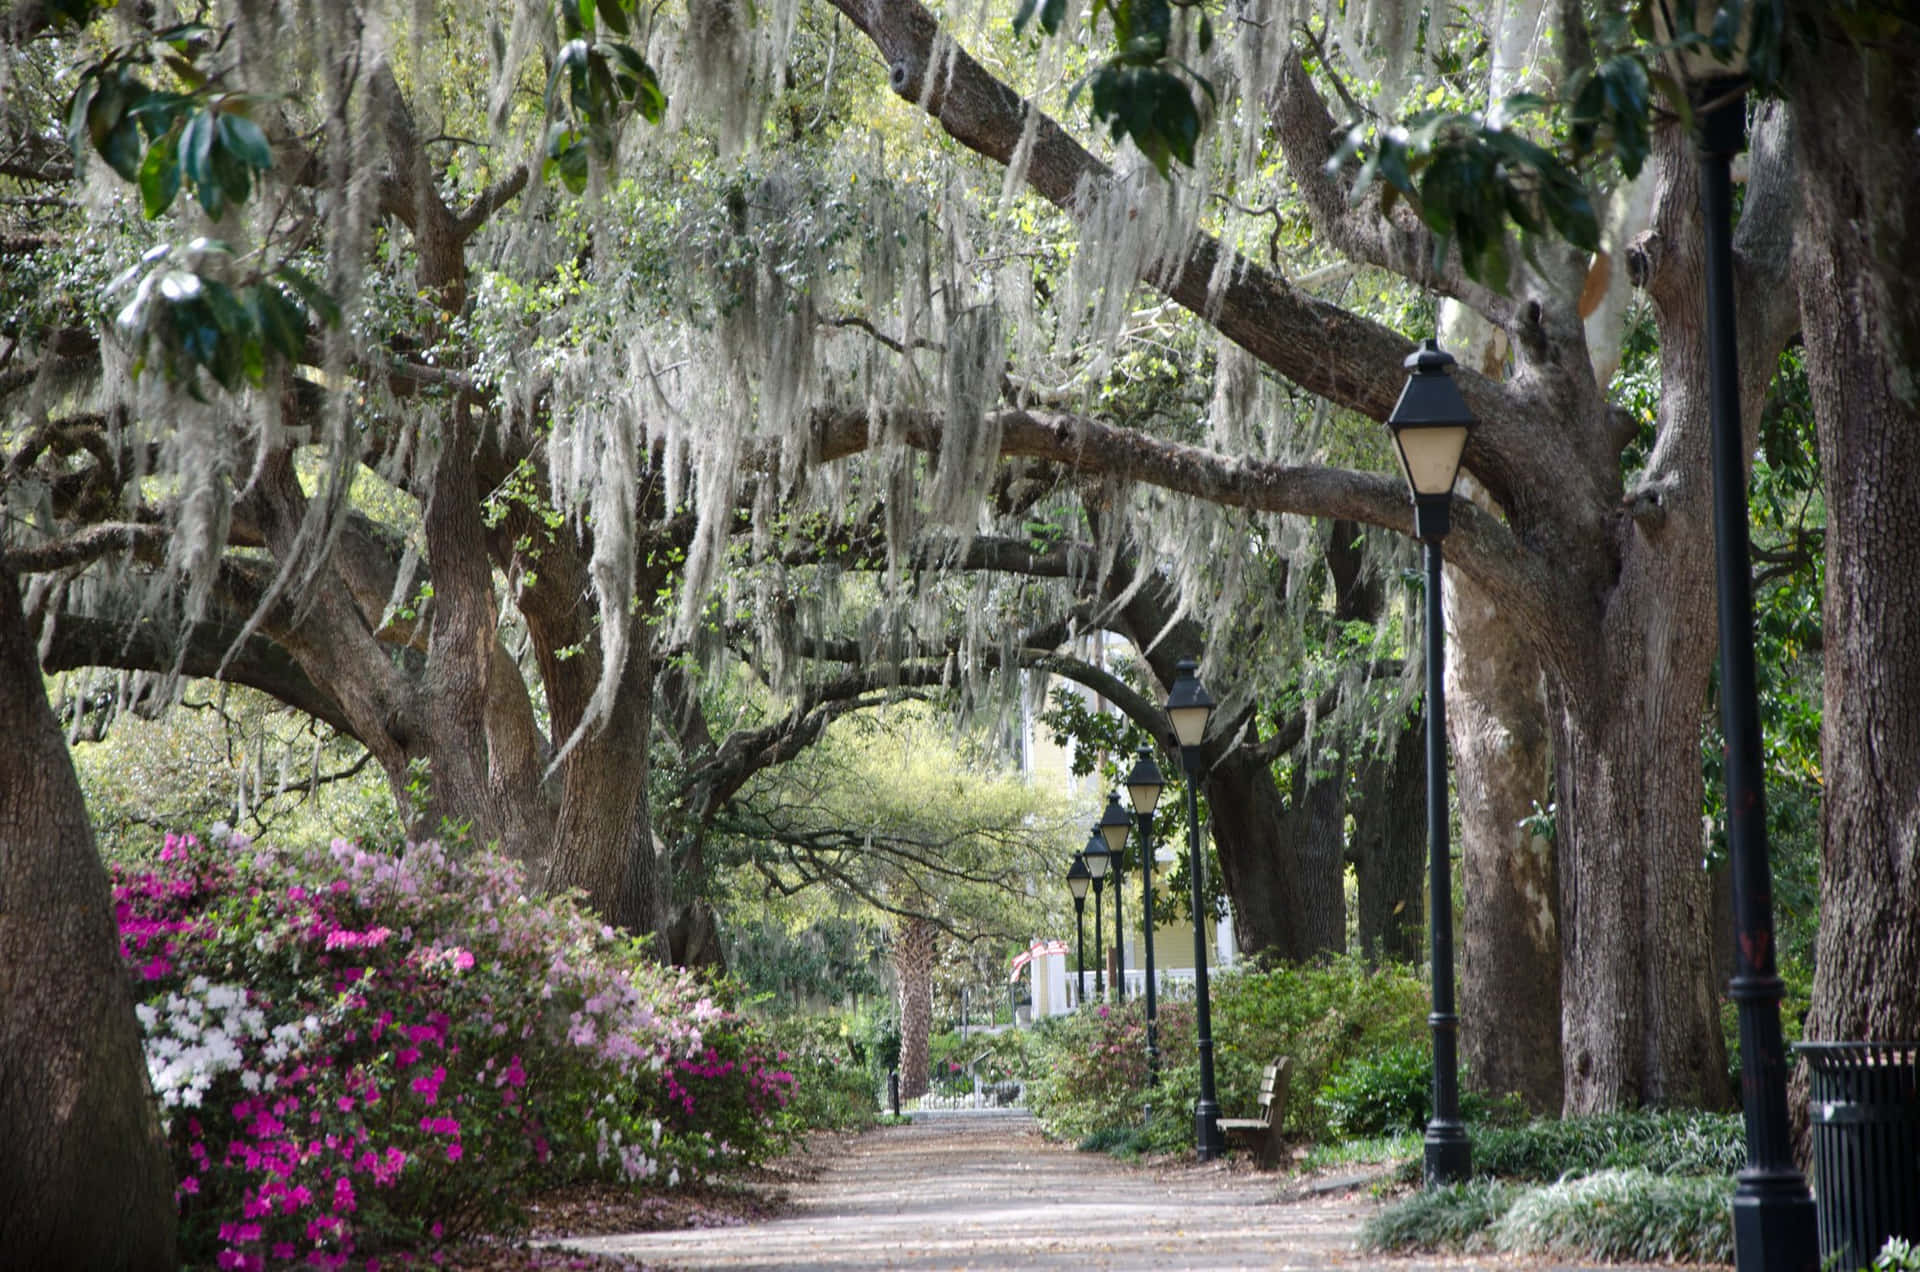 Enjoy the beauty of Savannah!